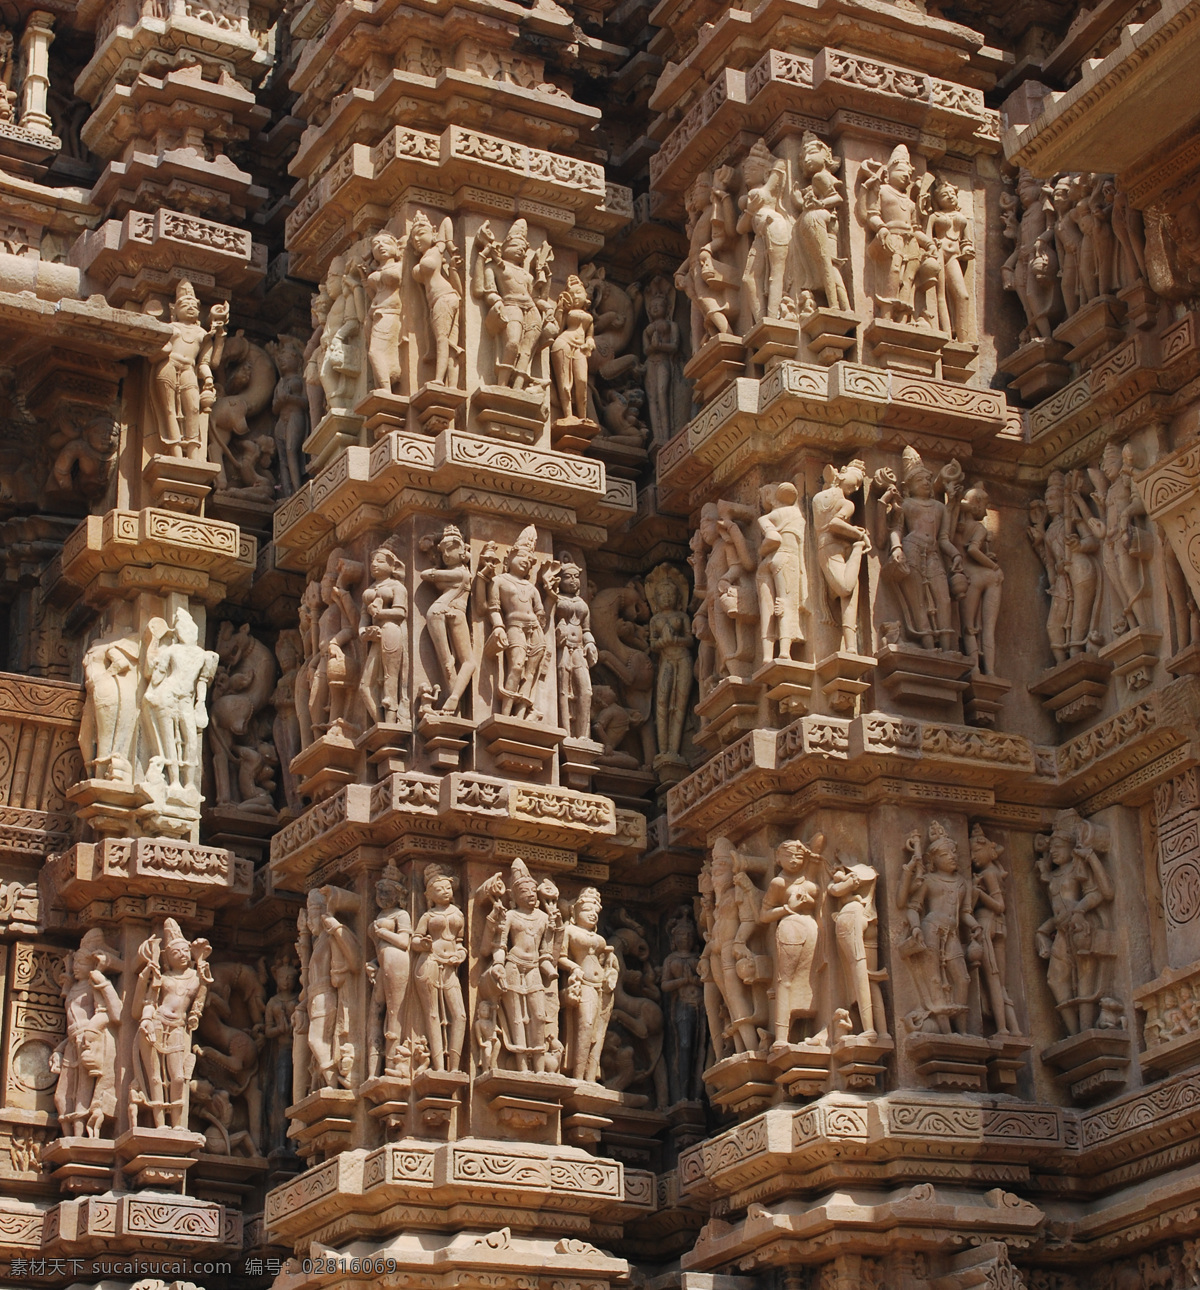 印度 雕刻 人物 建筑设计 印度中央邦 印度教堂 庙宇 雕刻建筑 名胜古迹 古老建筑 著名建筑 旅游景区 环境家居